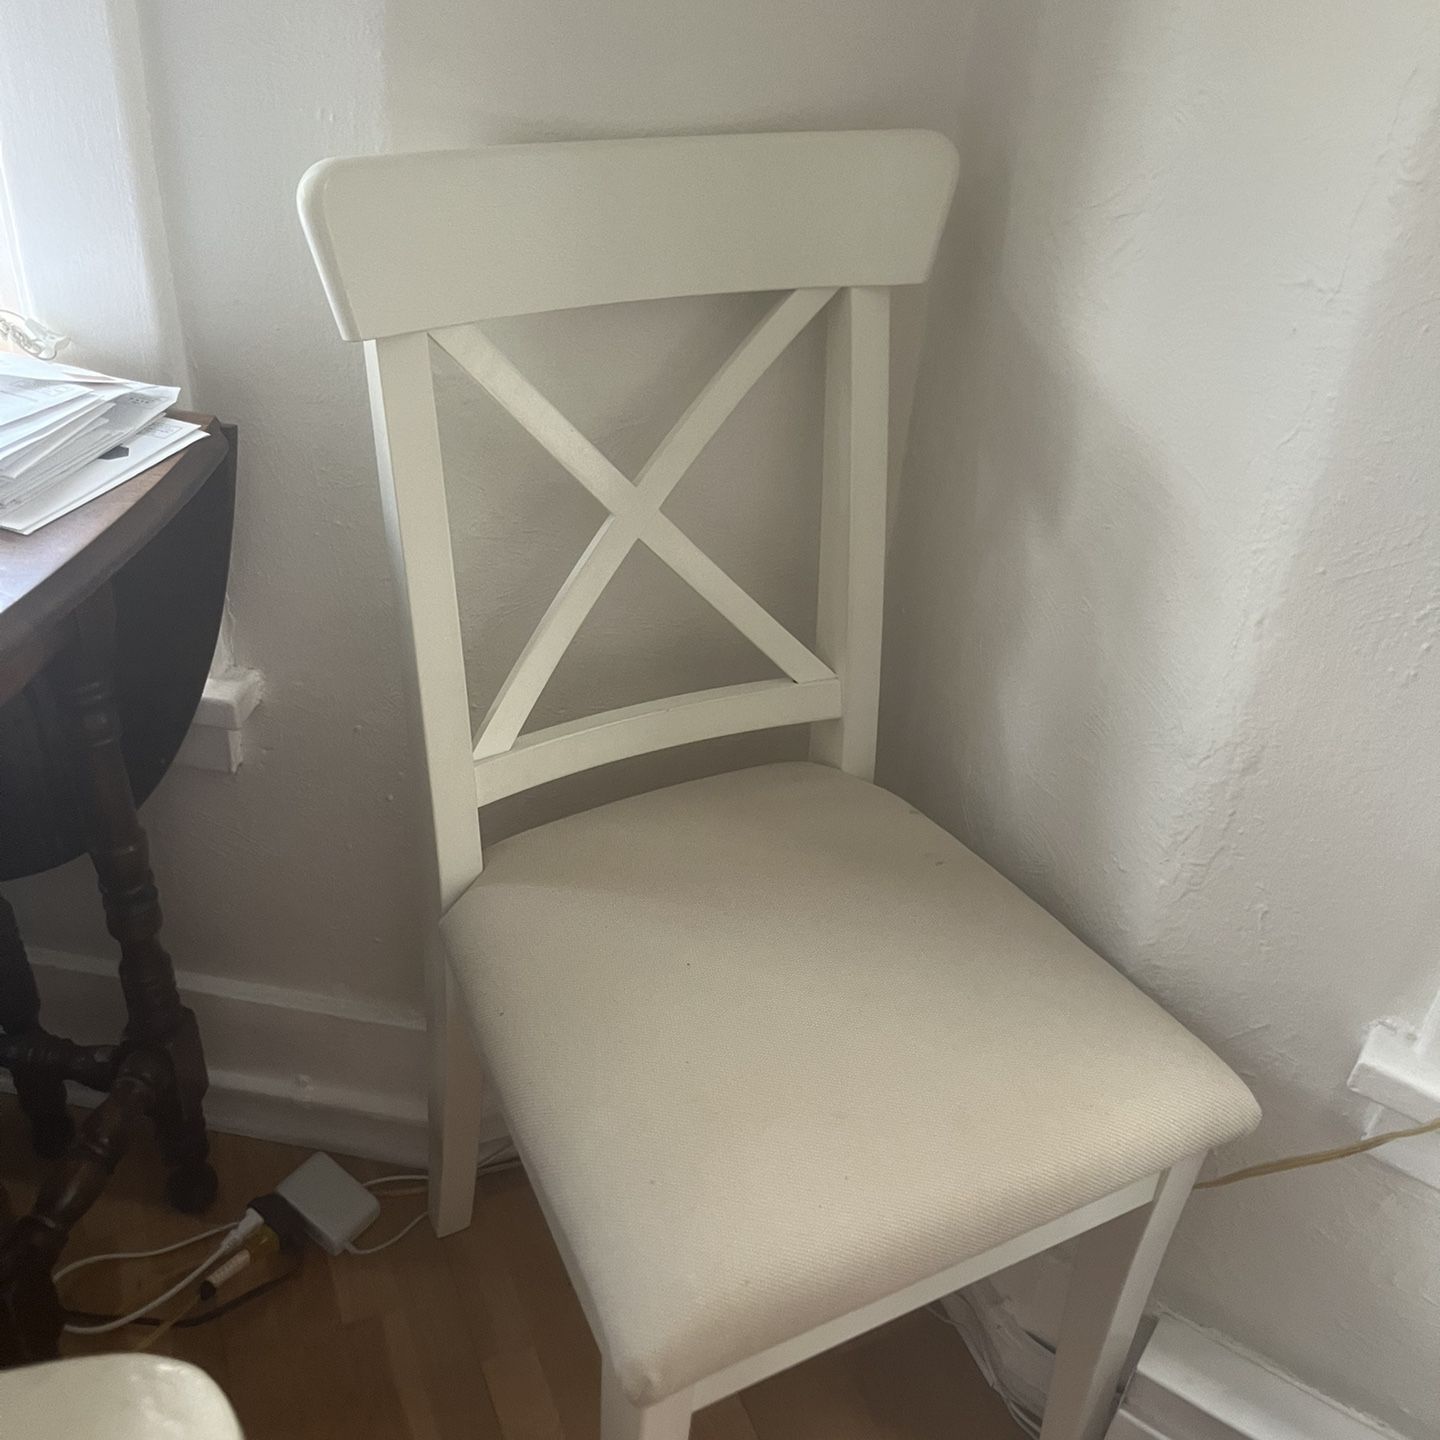 IKEA chair(s)